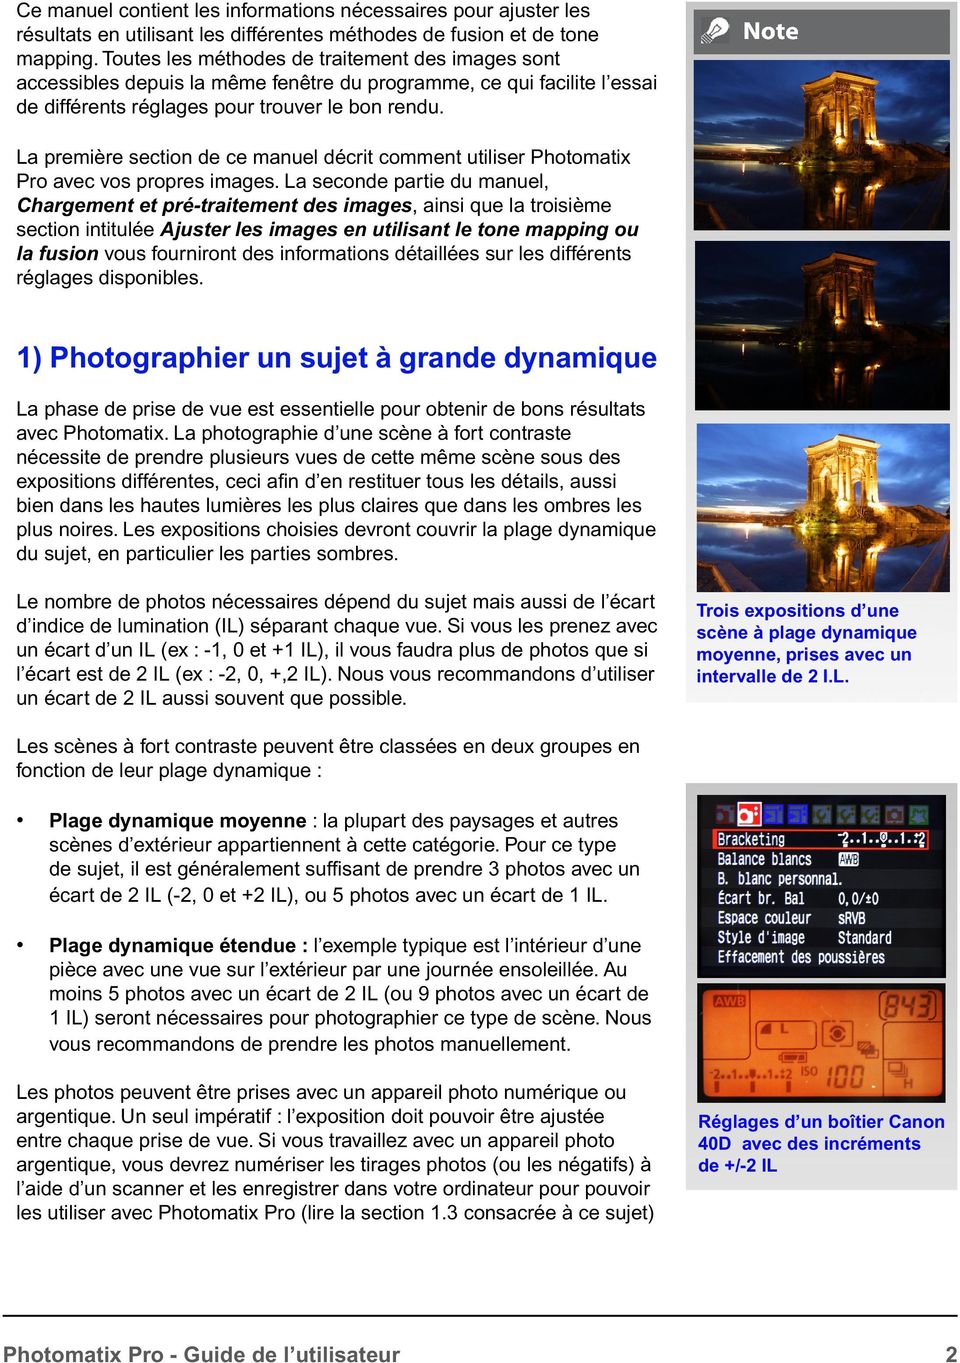 La première section de ce manuel décrit comment utiliser Photomatix Pro avec vos propres images.